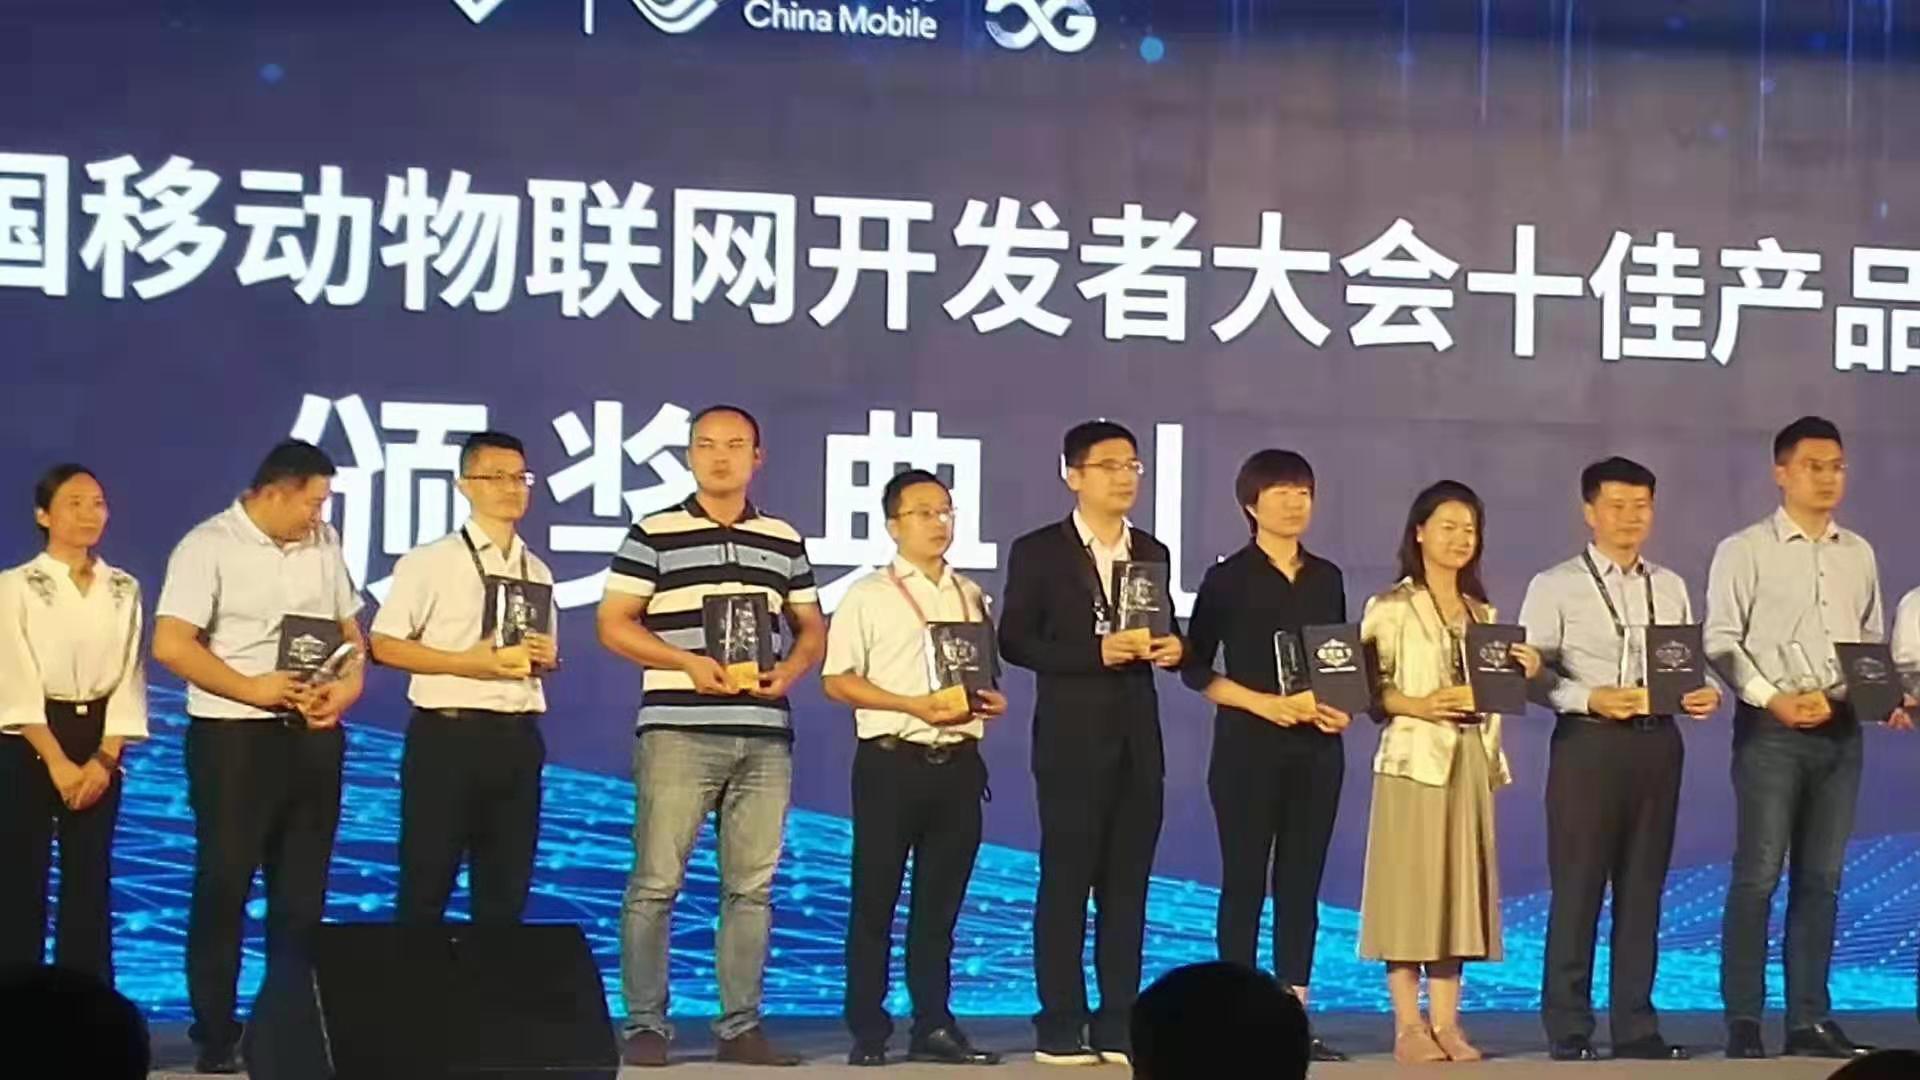 辉和科技---智能防雷预警系统 荣获“2019中国移动物联网开发者大会十佳产品”